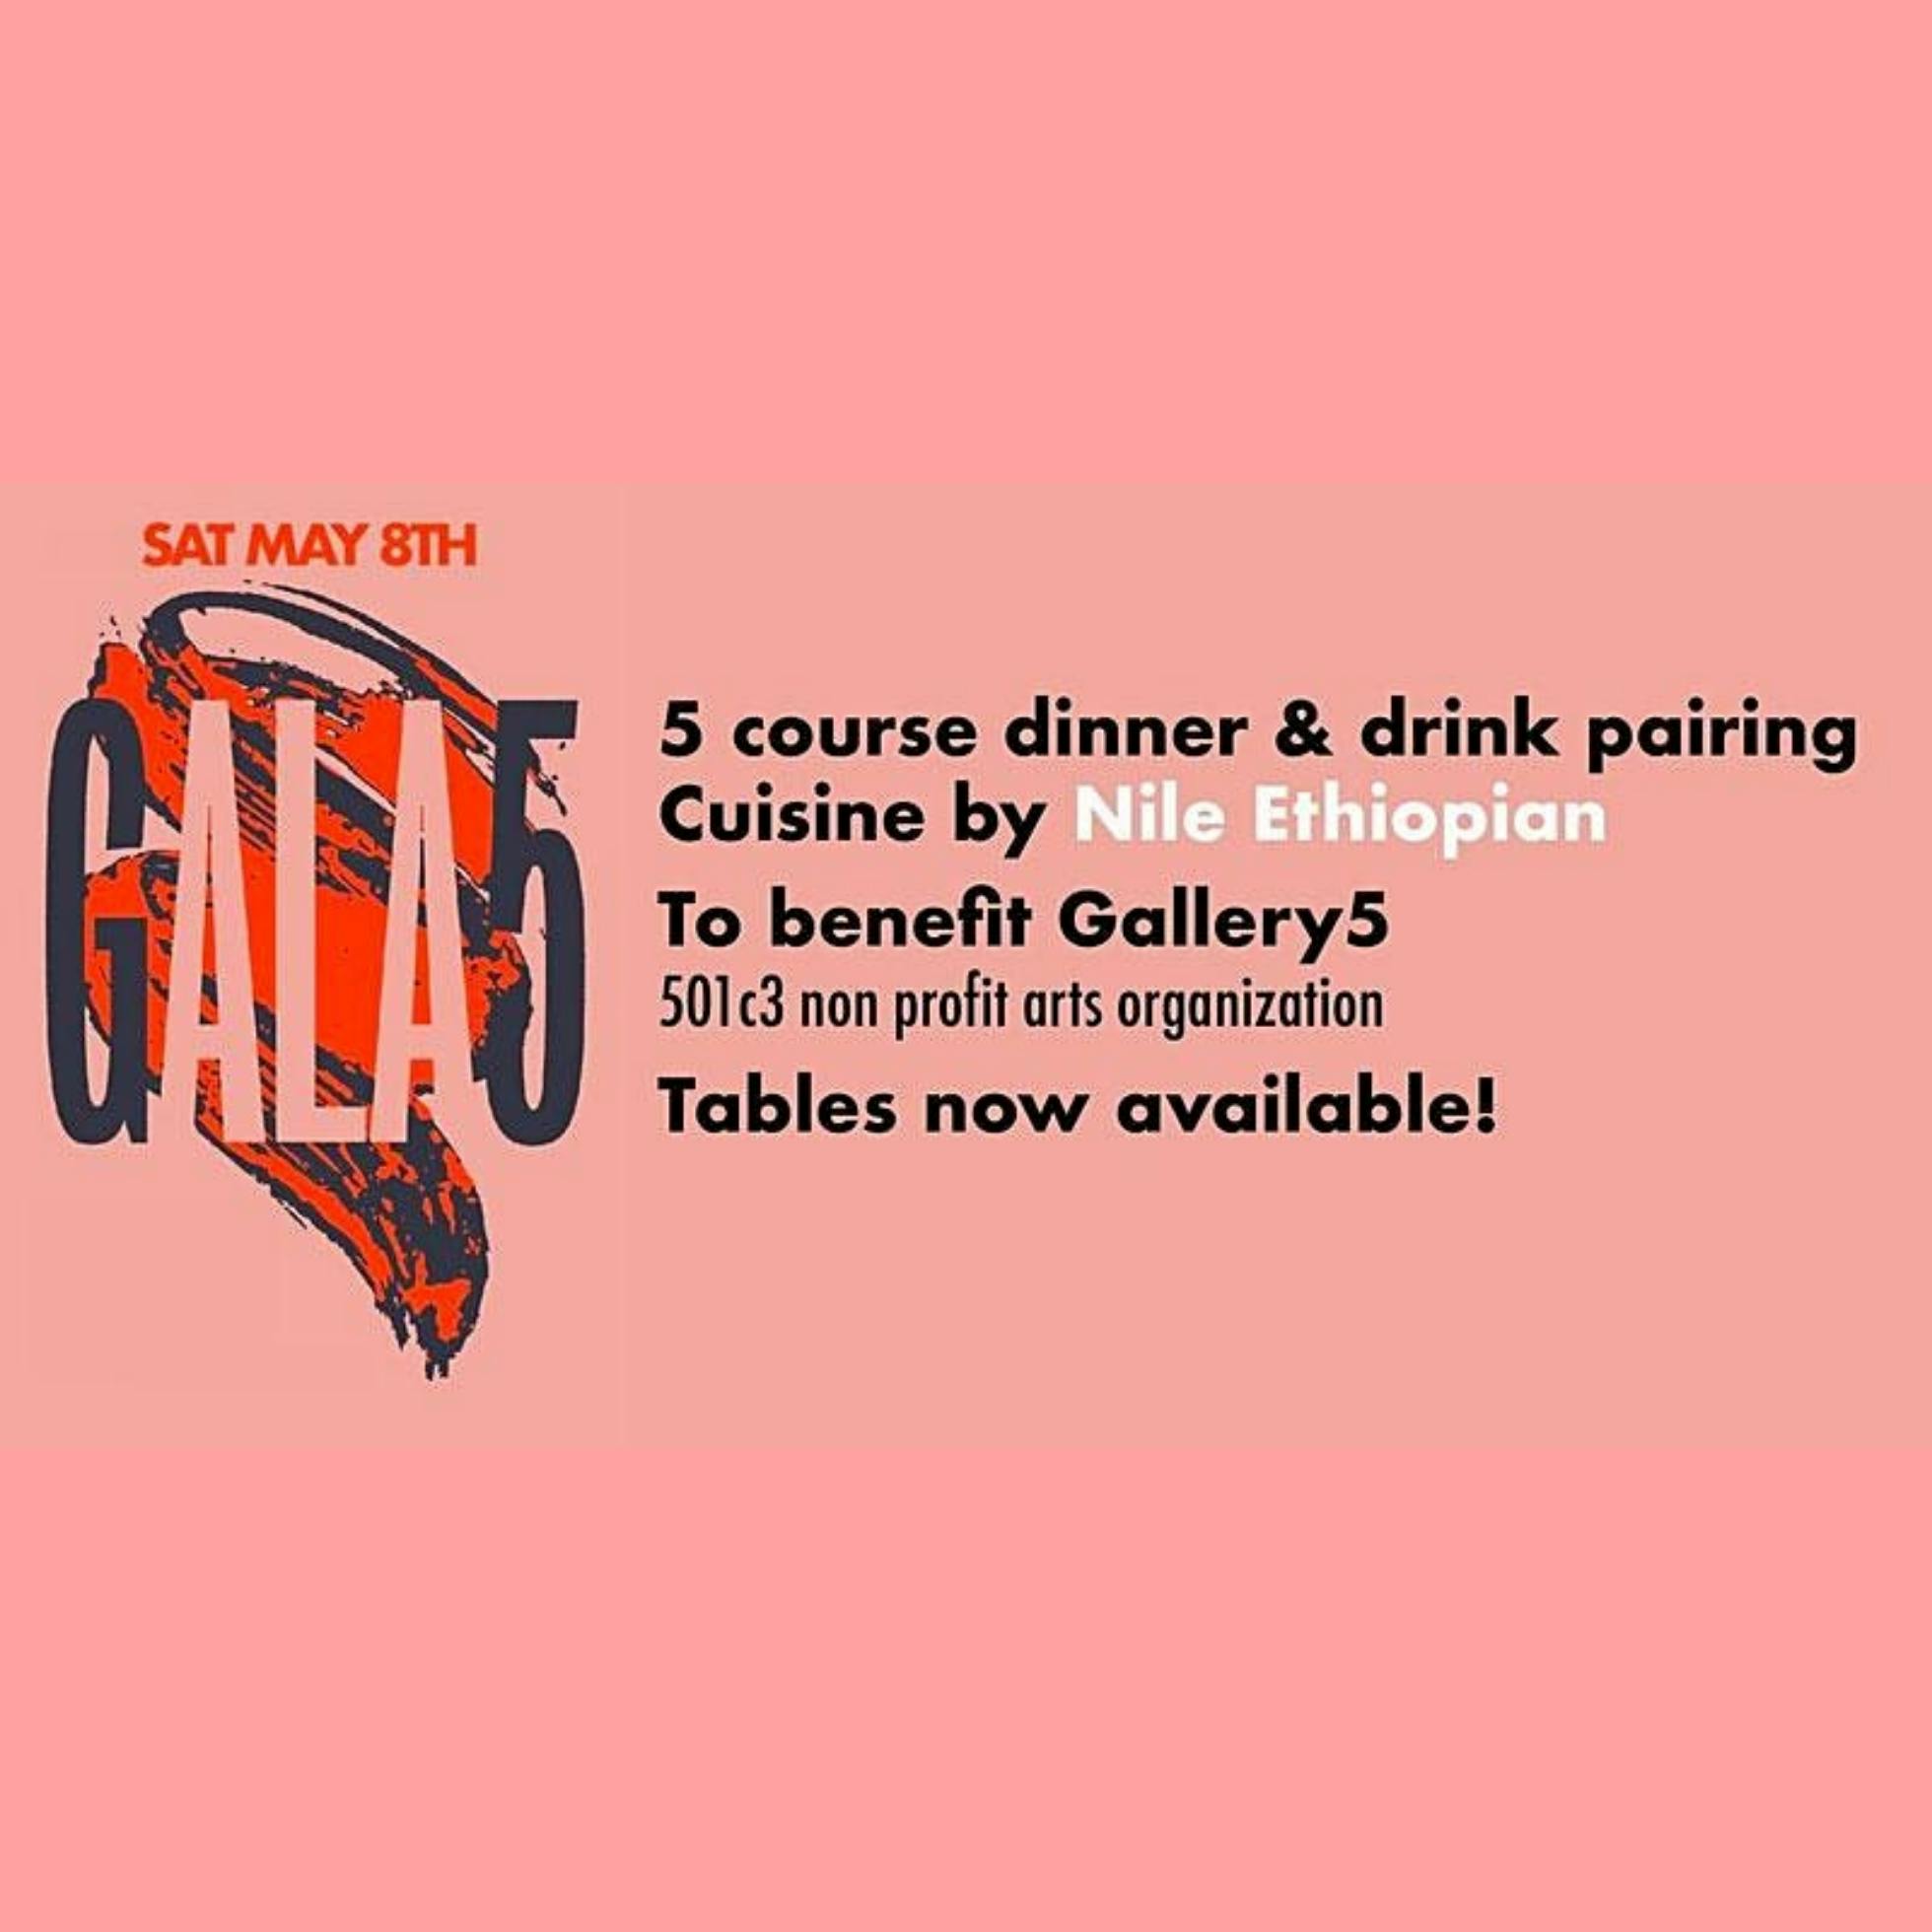 GALA5 Gallery5 Fundraiser Dinner